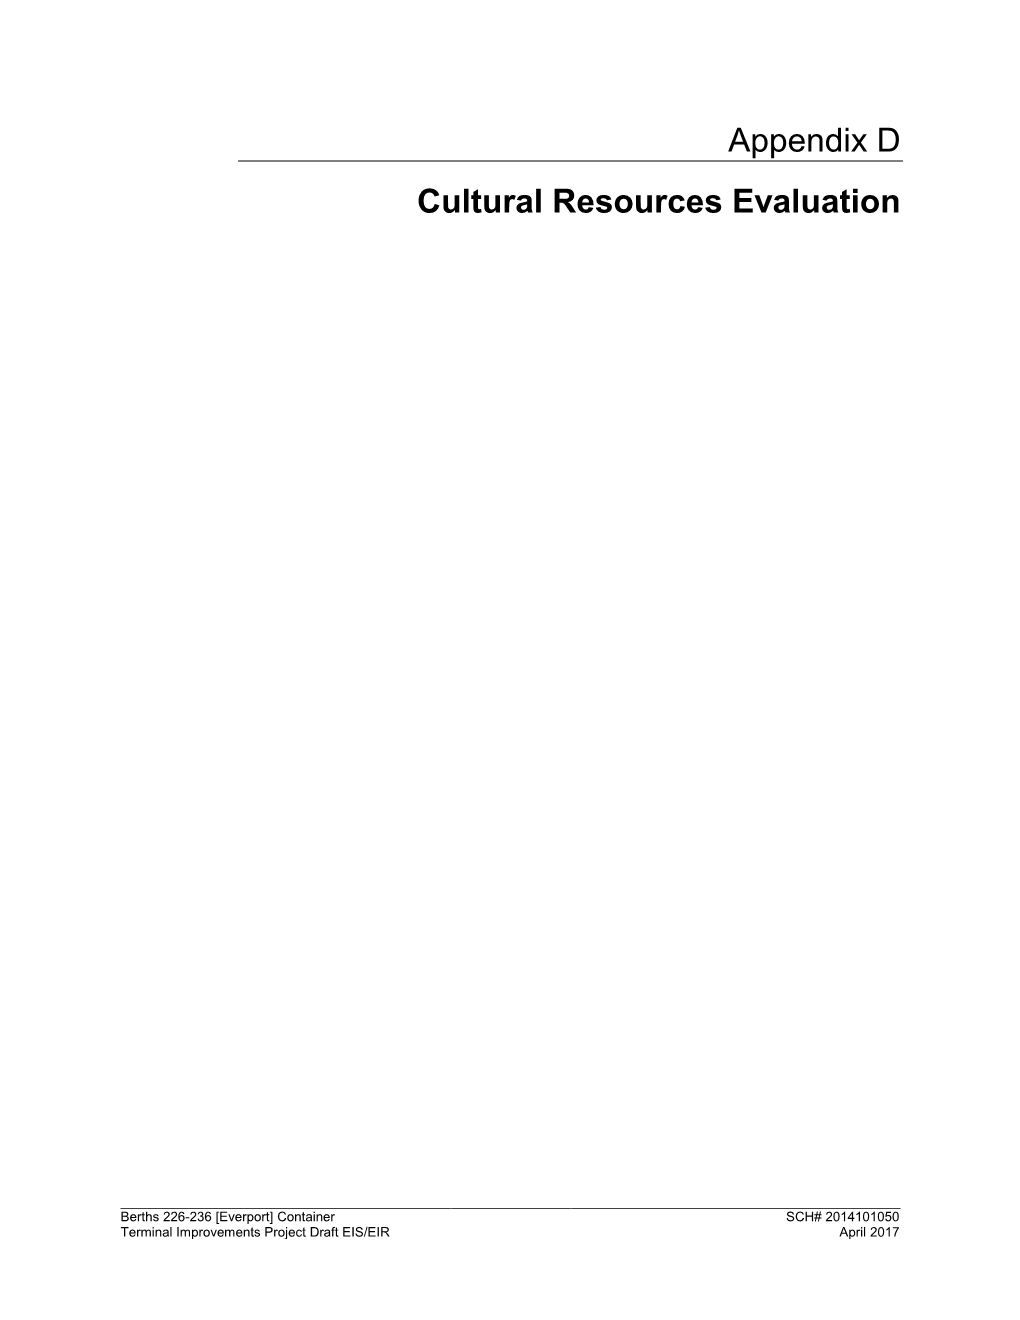 Appendix D Cultural Resources Evaluation